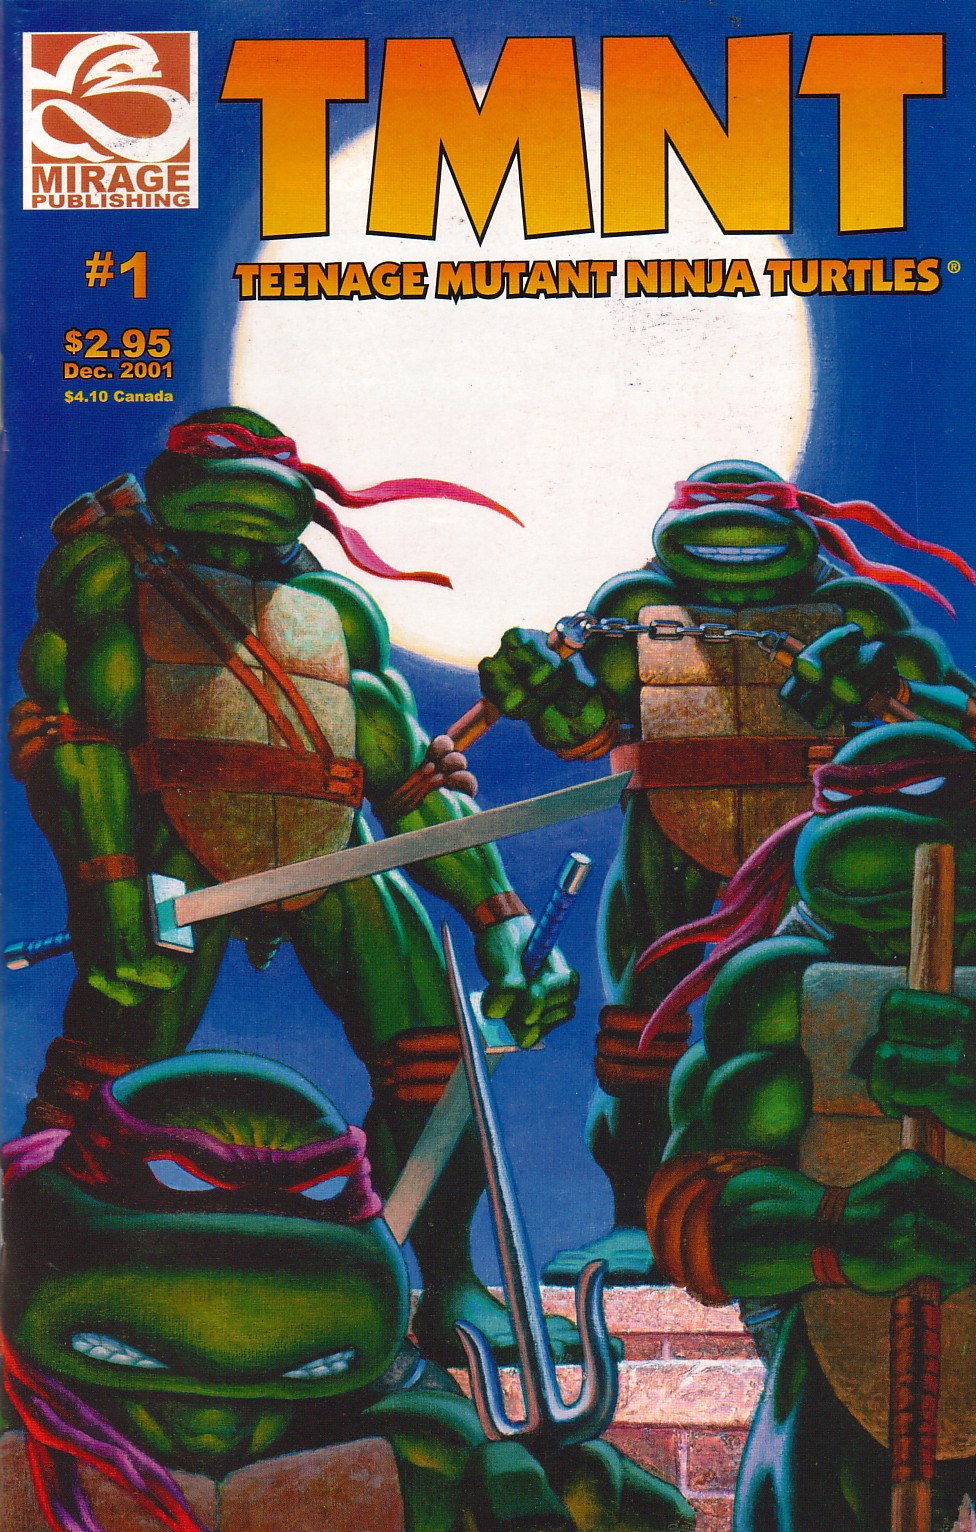 Read online TMNT: Teenage Mutant Ninja Turtles comic -  Issue #1 - 1